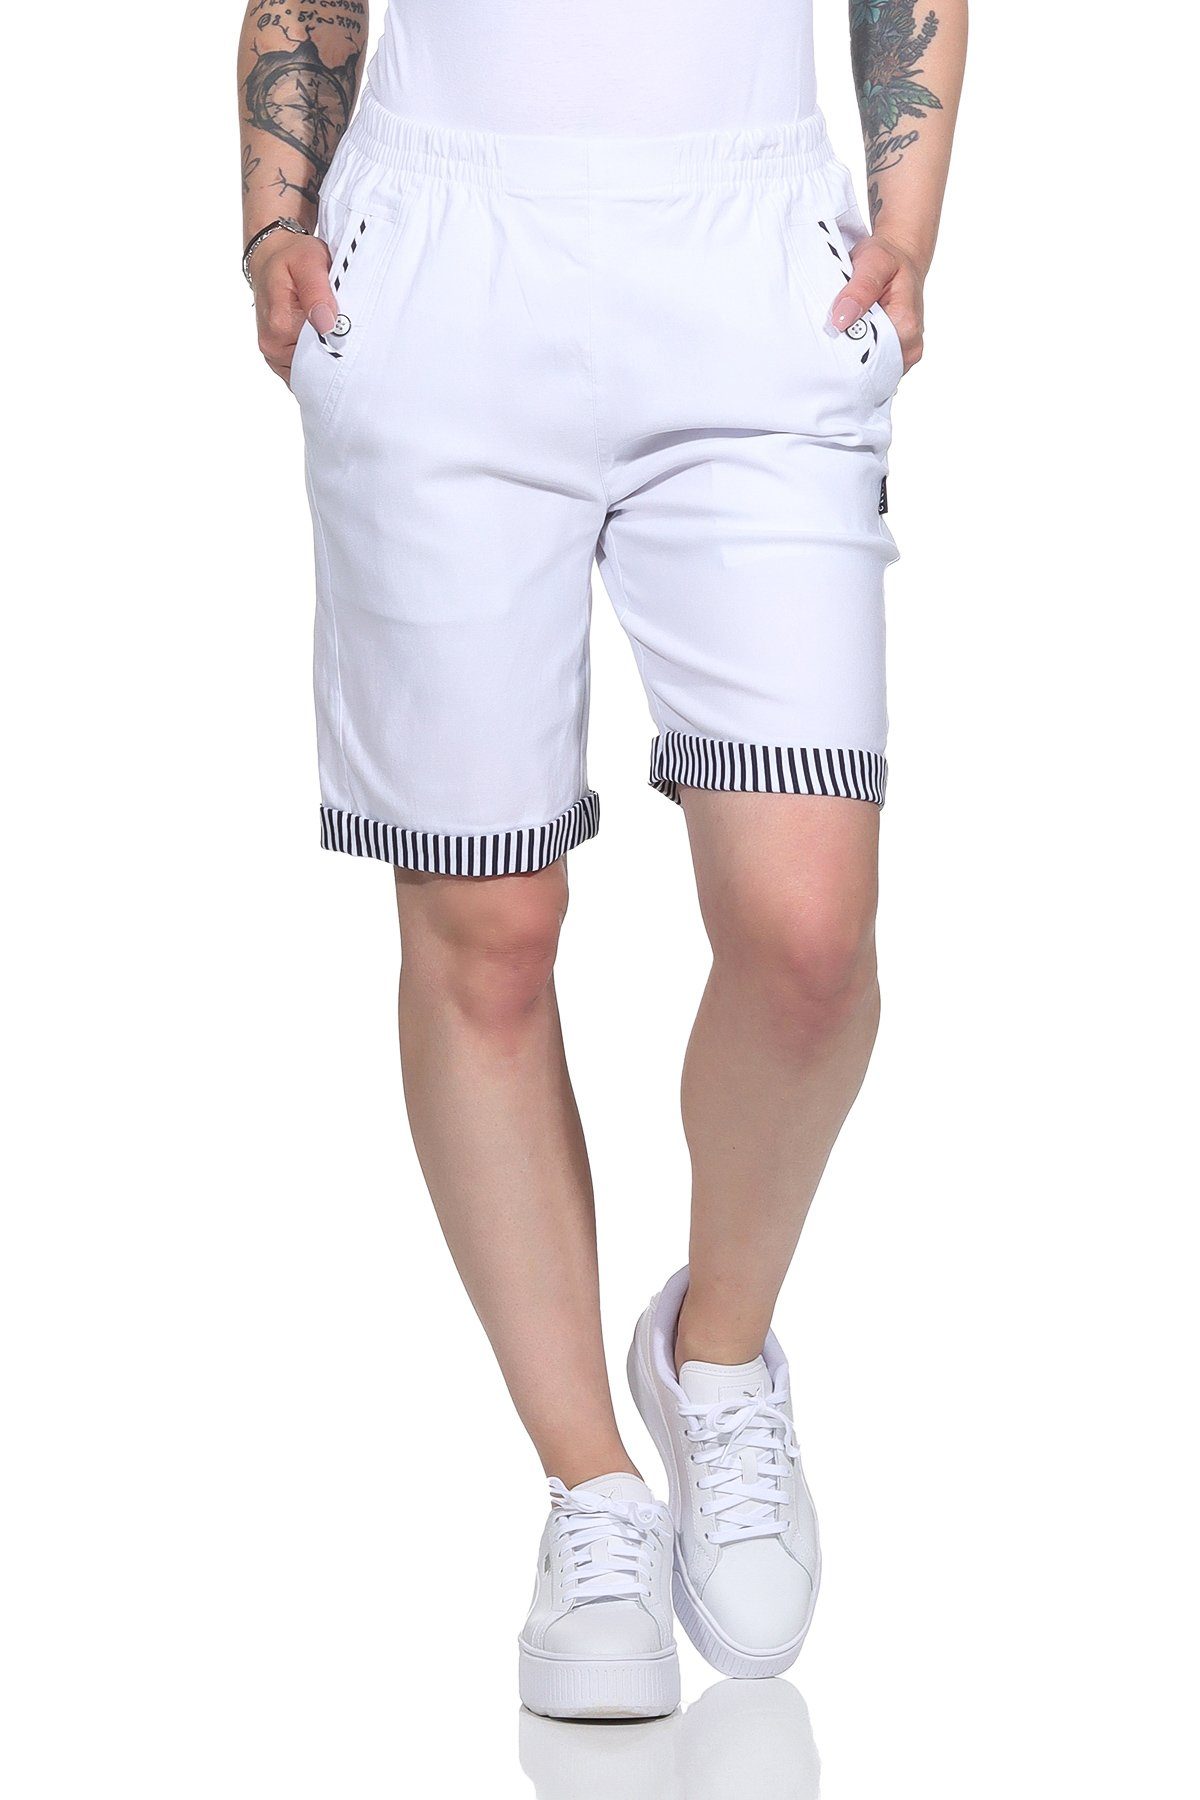 Strandbermuda Bund, Damenmode maritimen Shorts mit großen auch Shorts in mit Aurela Details Damen erhältlich, Größen Weiß Bermuda Sommer Maritime elastischem